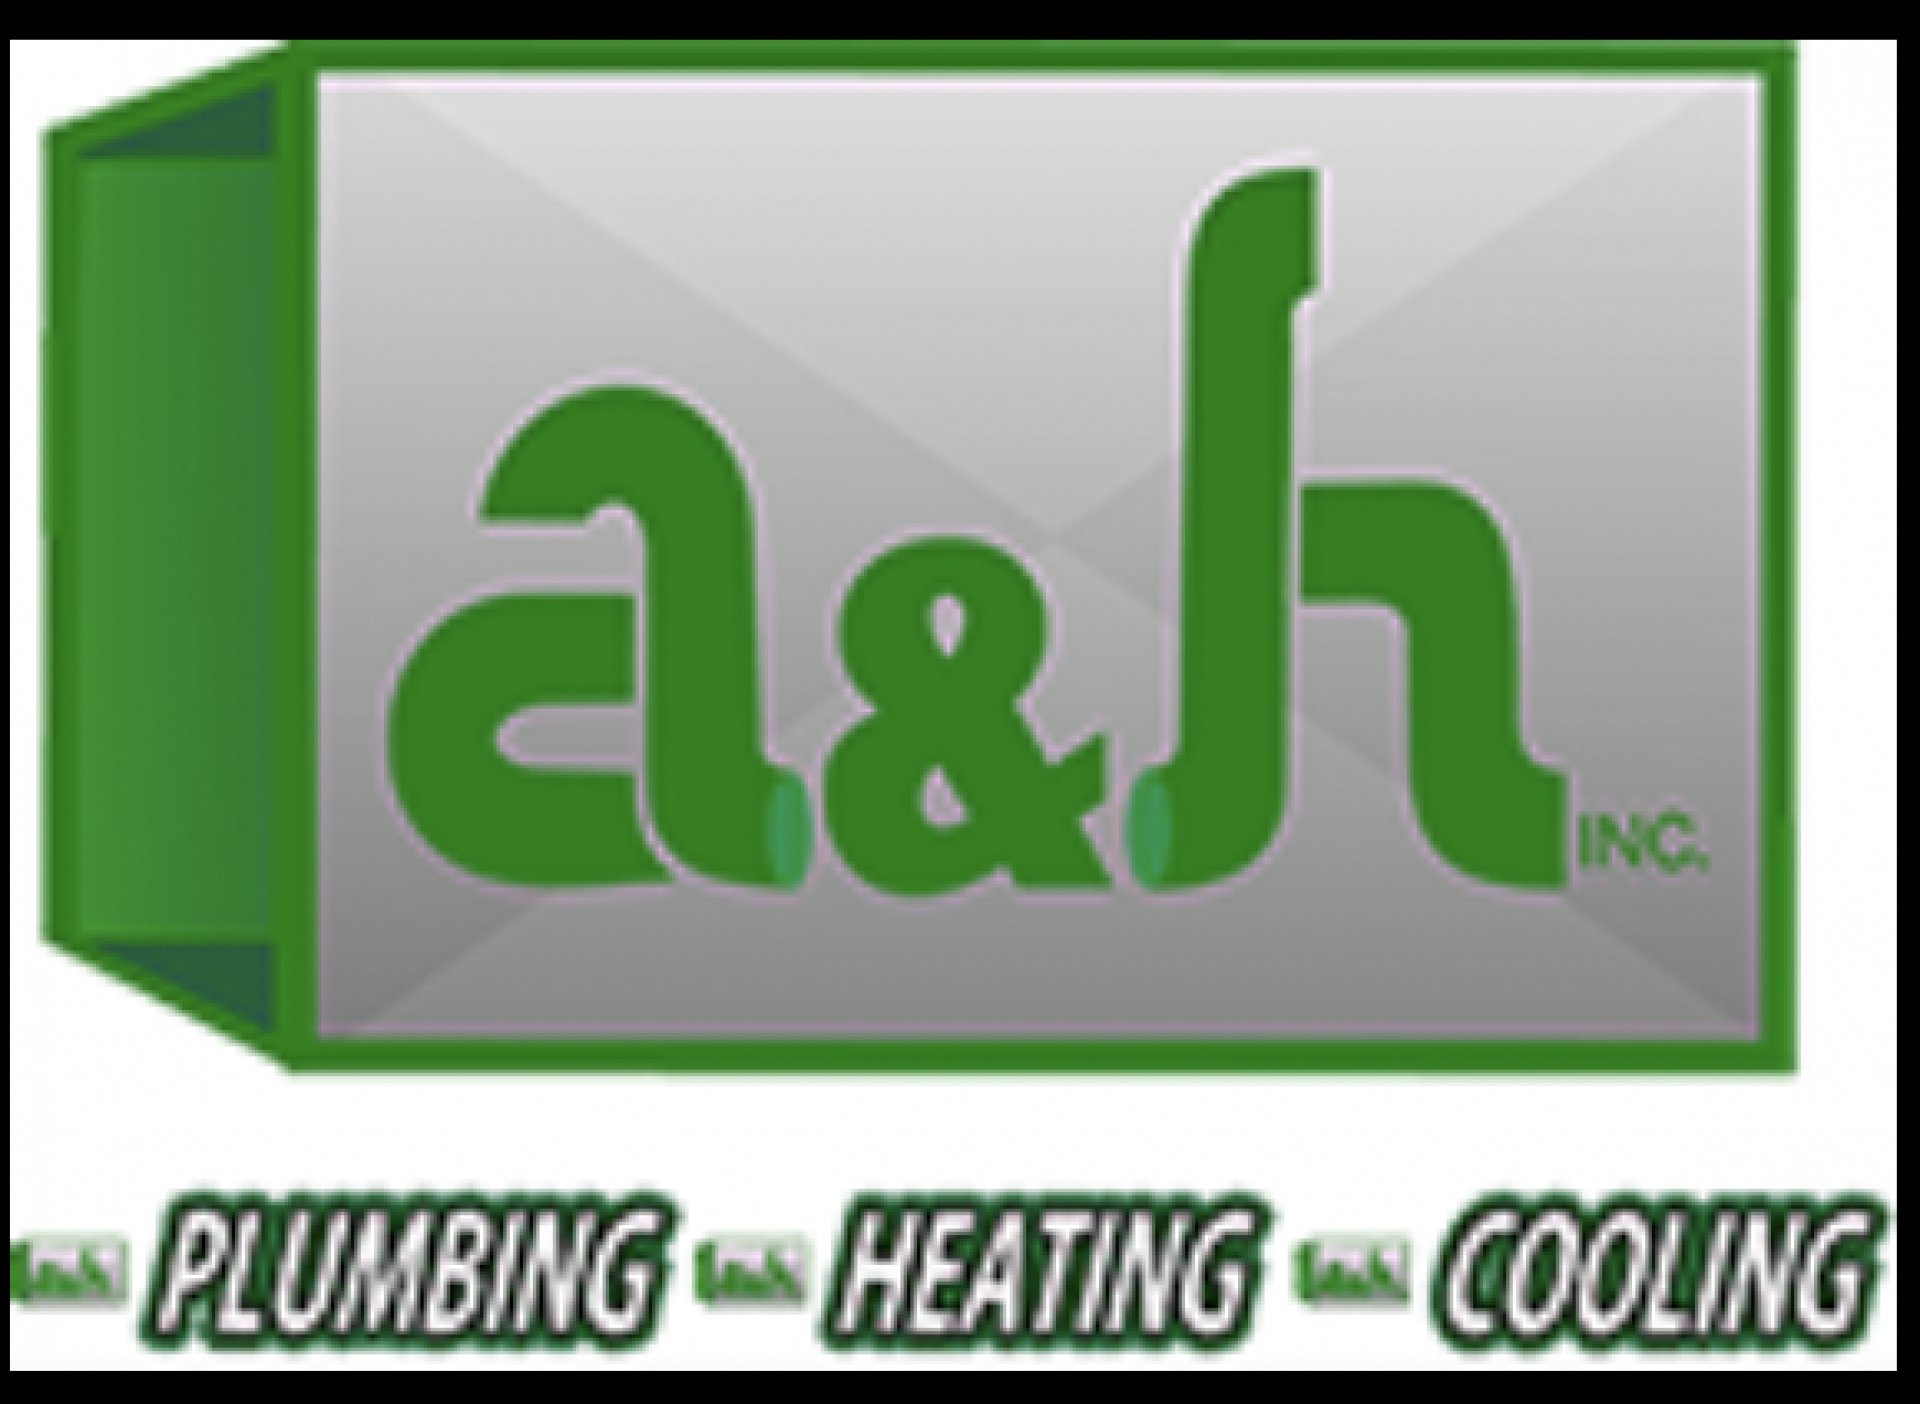 A & H Heating and Air Inc. logo